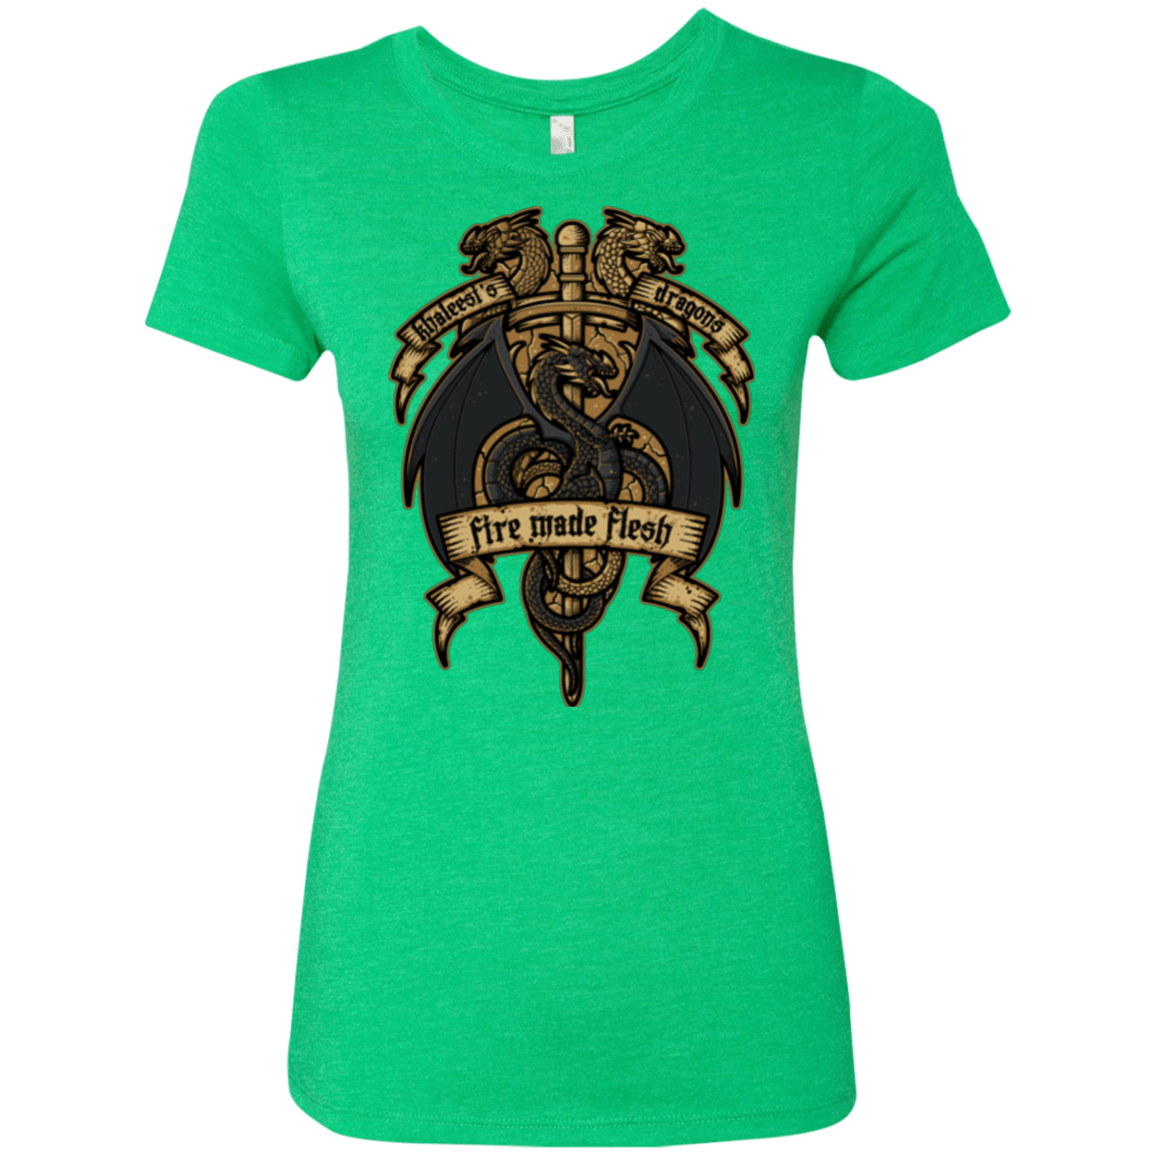 KHALEESIS DRAGONS Women's Triblend T-Shirt